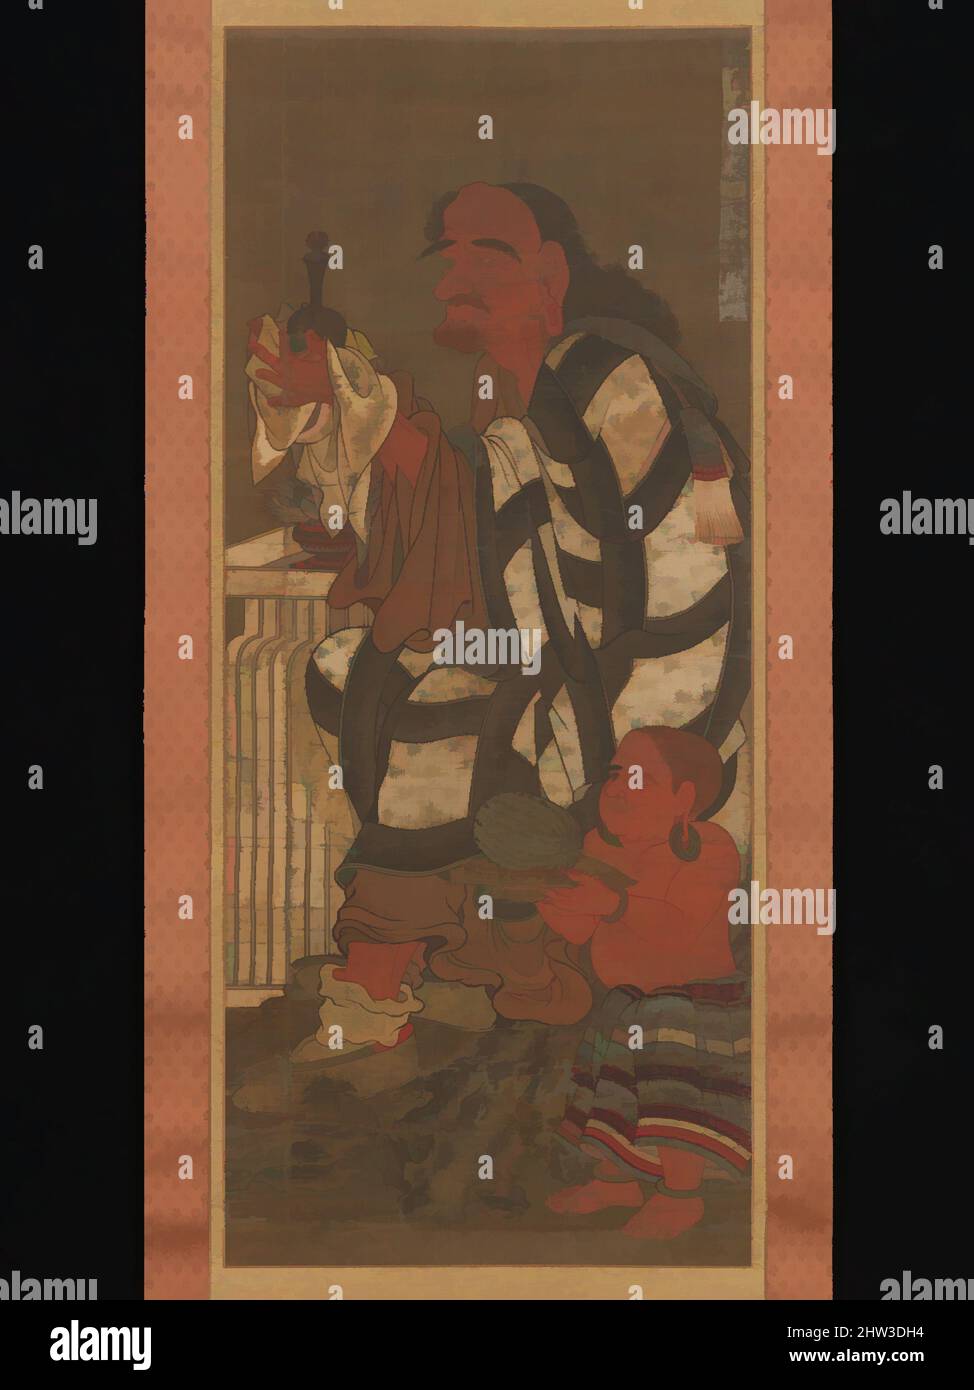 Art inspiré par Satsubari, le deuxième des seize Arhats, période Nanbokuchō (1336–92), fin du 14th siècle, Japon, défilement suspendu; Encre et couleur sur soie, image : 45 11/16 × 19 3/8 po. (116 × 49,2 cm), peintures, oeuvres classiques modernisées par Artotop avec une touche de modernité. Formes, couleur et valeur, impact visuel accrocheur sur l'art émotions par la liberté d'œuvres d'art d'une manière contemporaine. Un message intemporel qui cherche une nouvelle direction créative. Artistes qui se tournent vers le support numérique et créent le NFT Artotop Banque D'Images